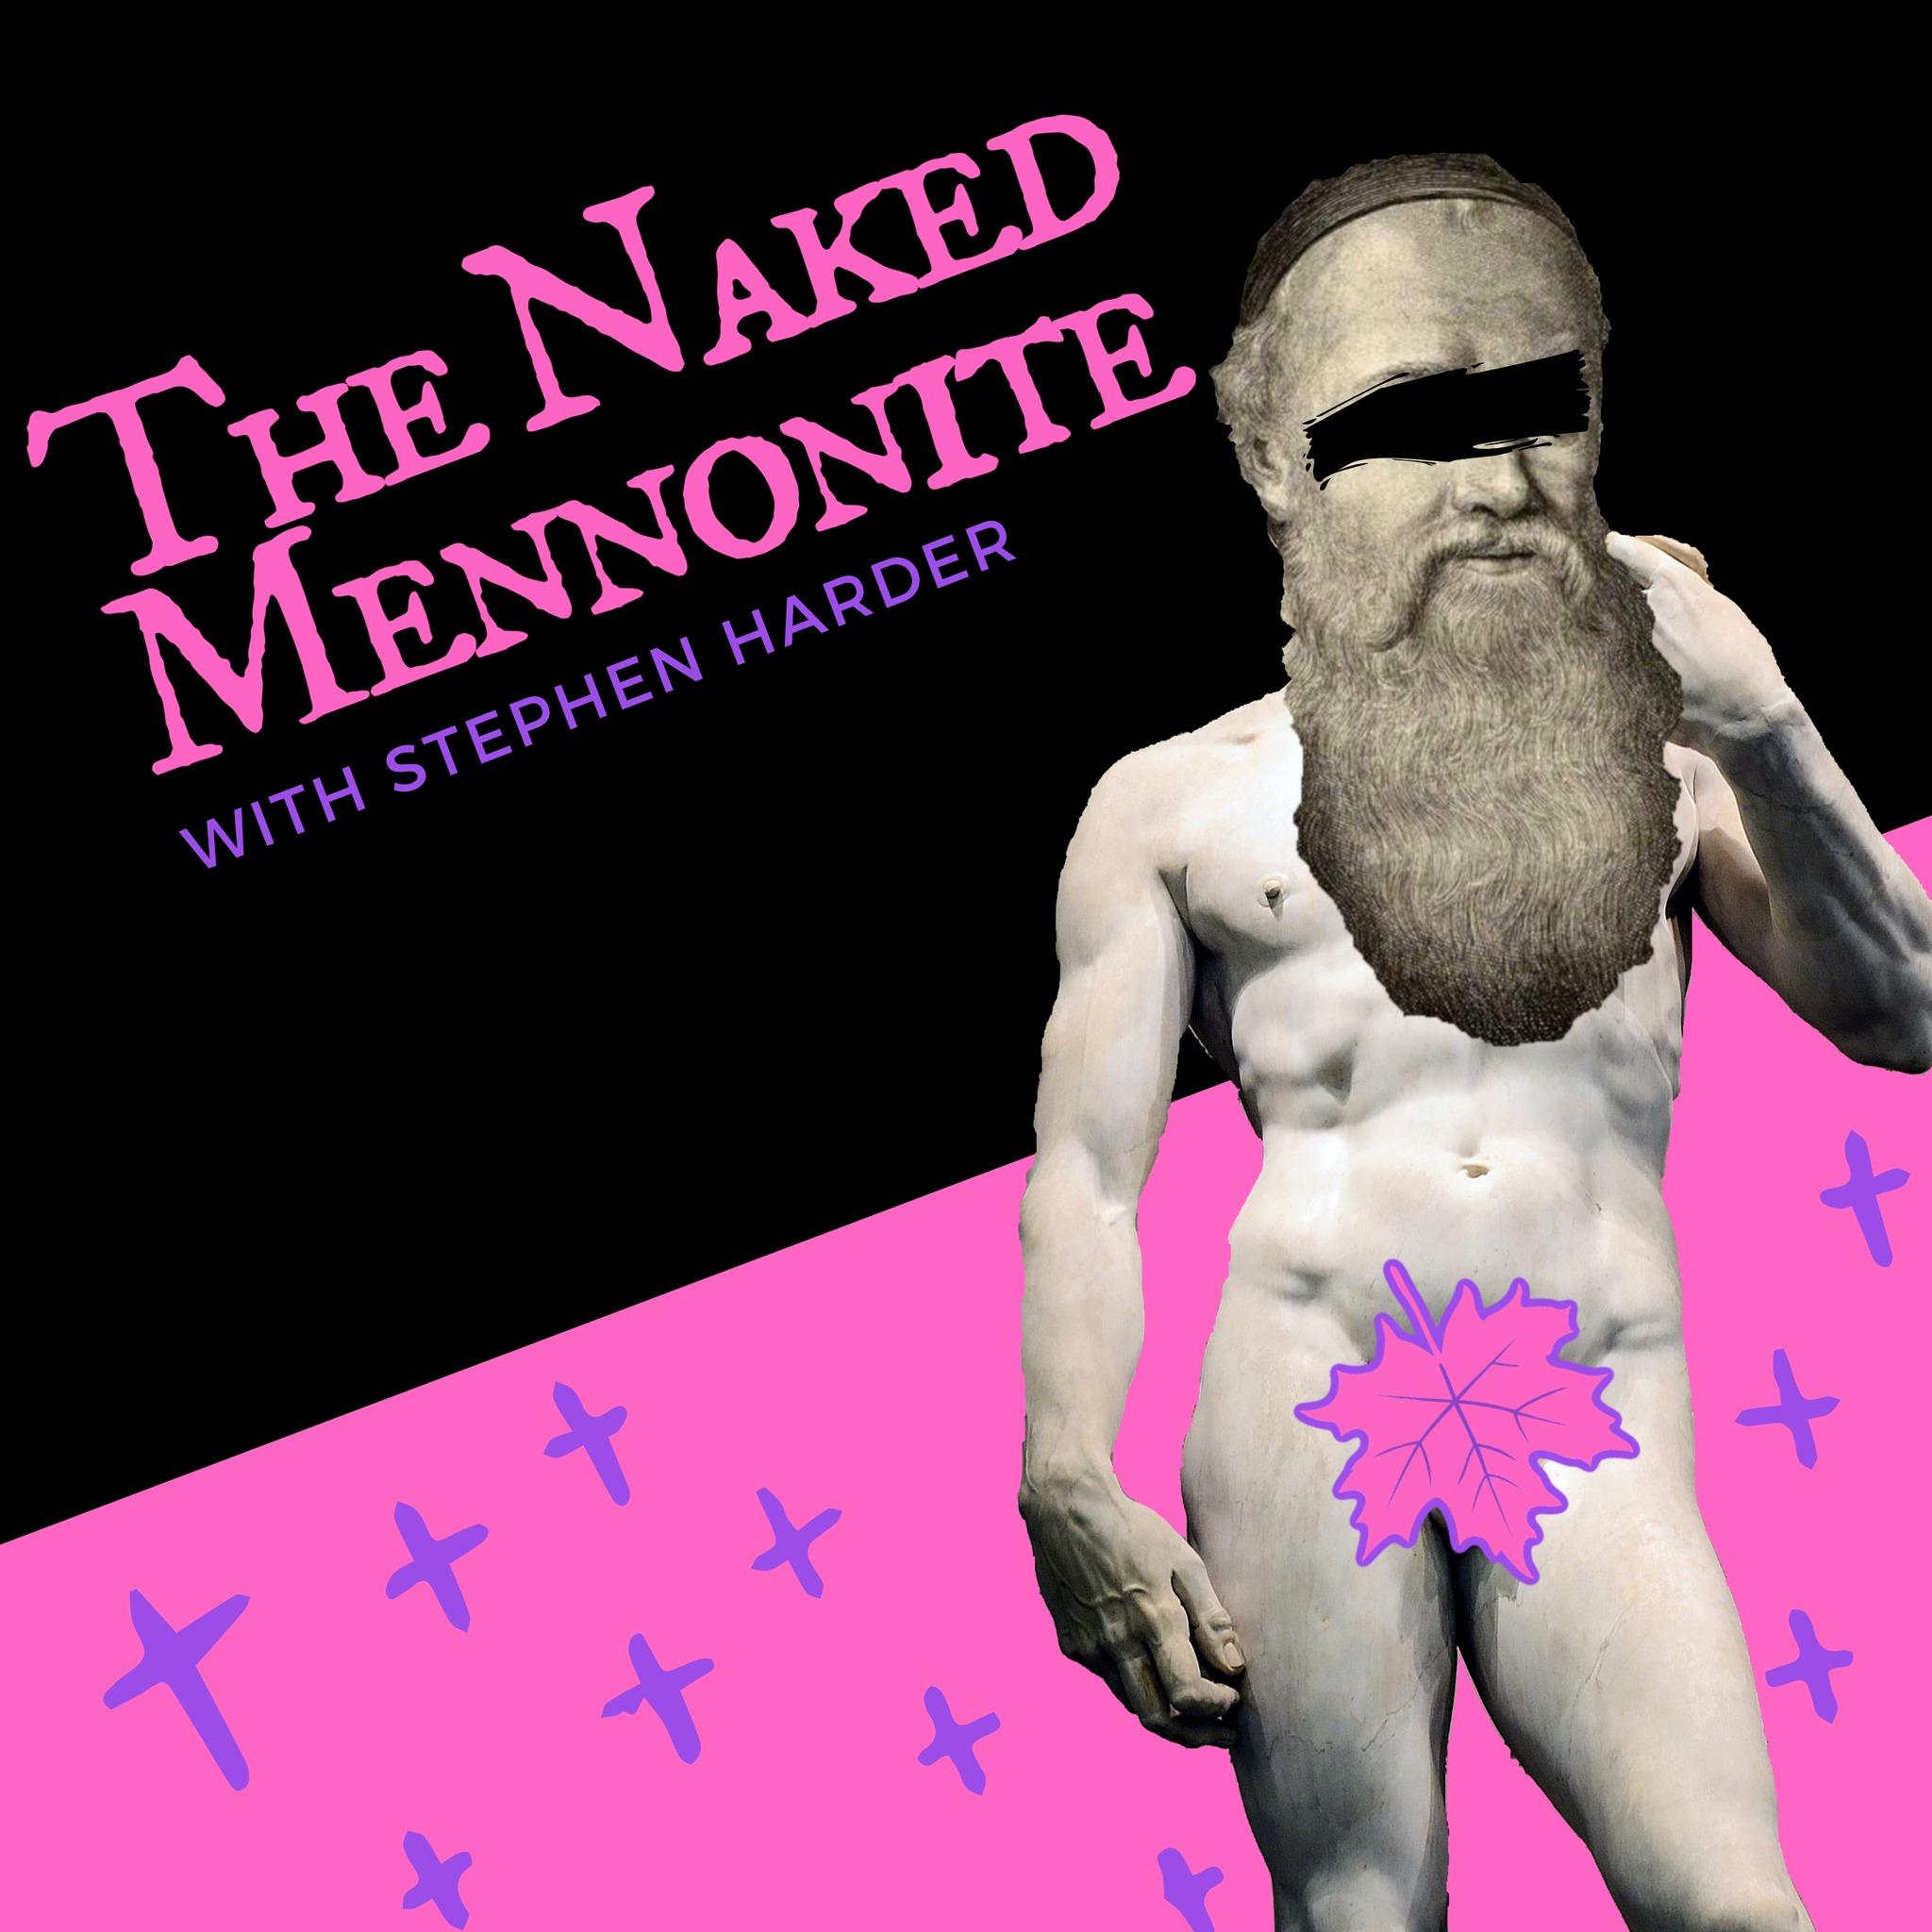 The Naked Mennonite